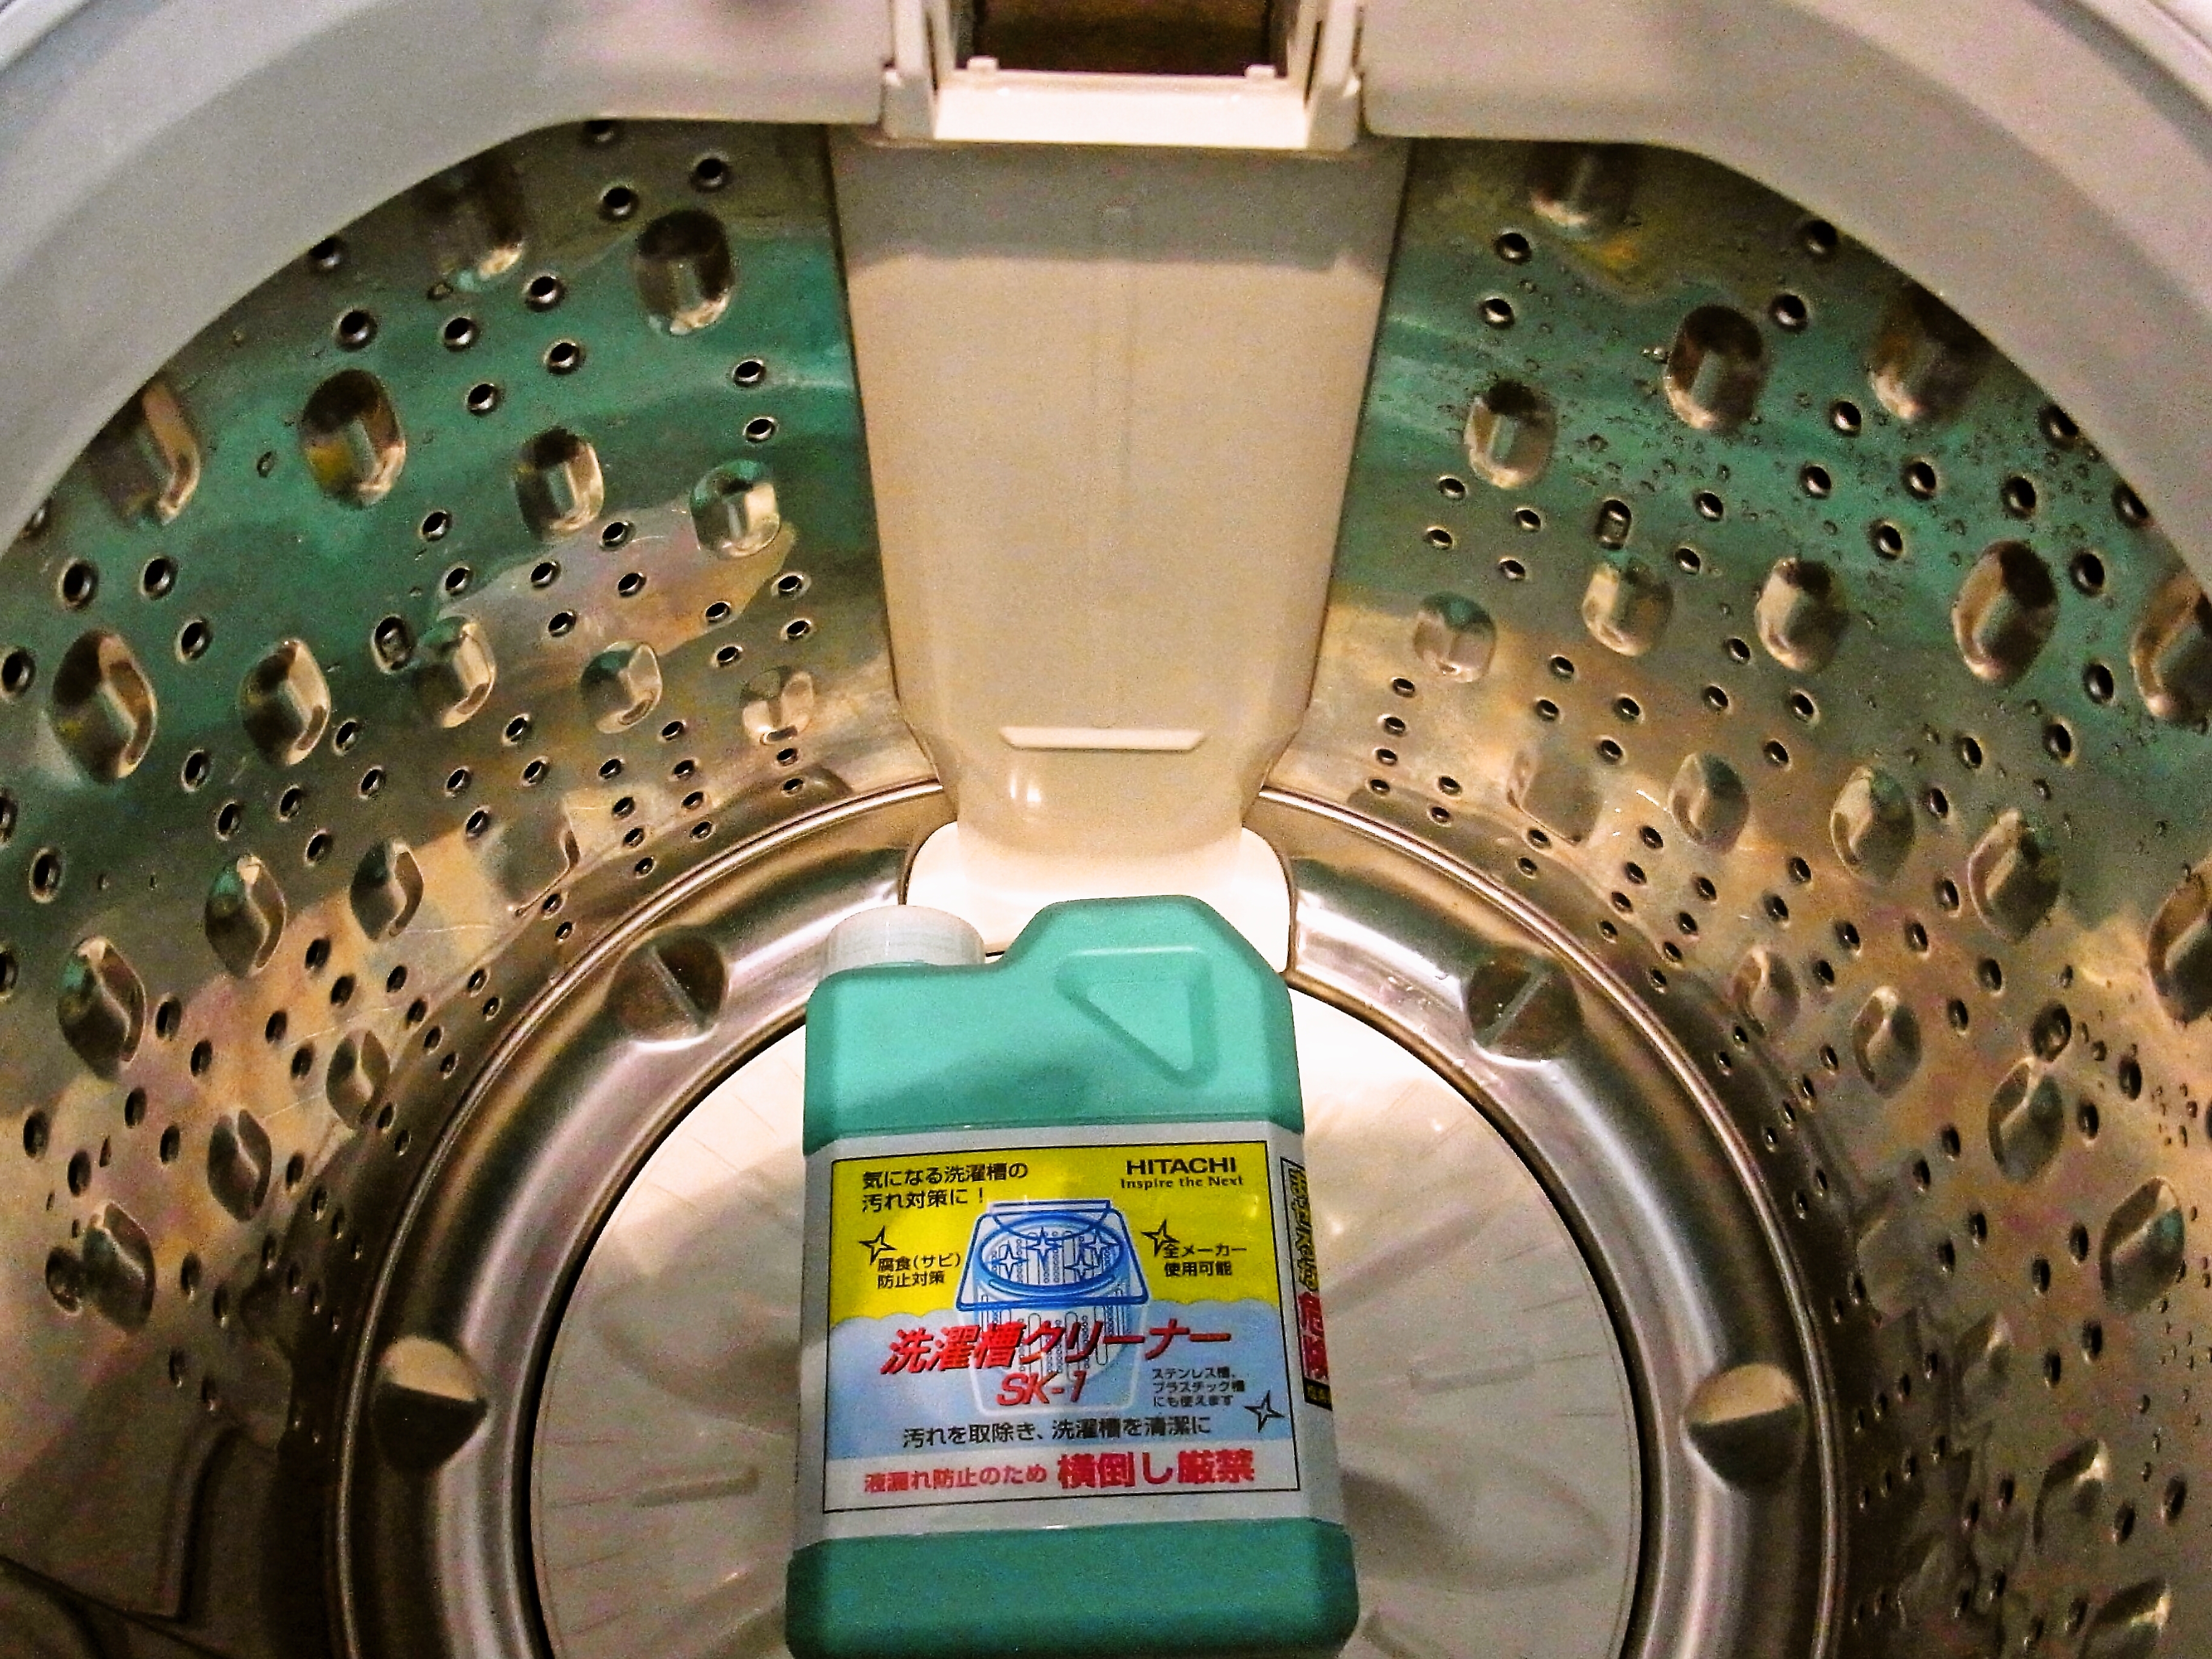 日立 HITACHI SK-750 ドラム式洗濯機用洗濯槽クリーナー 1回分1,480円